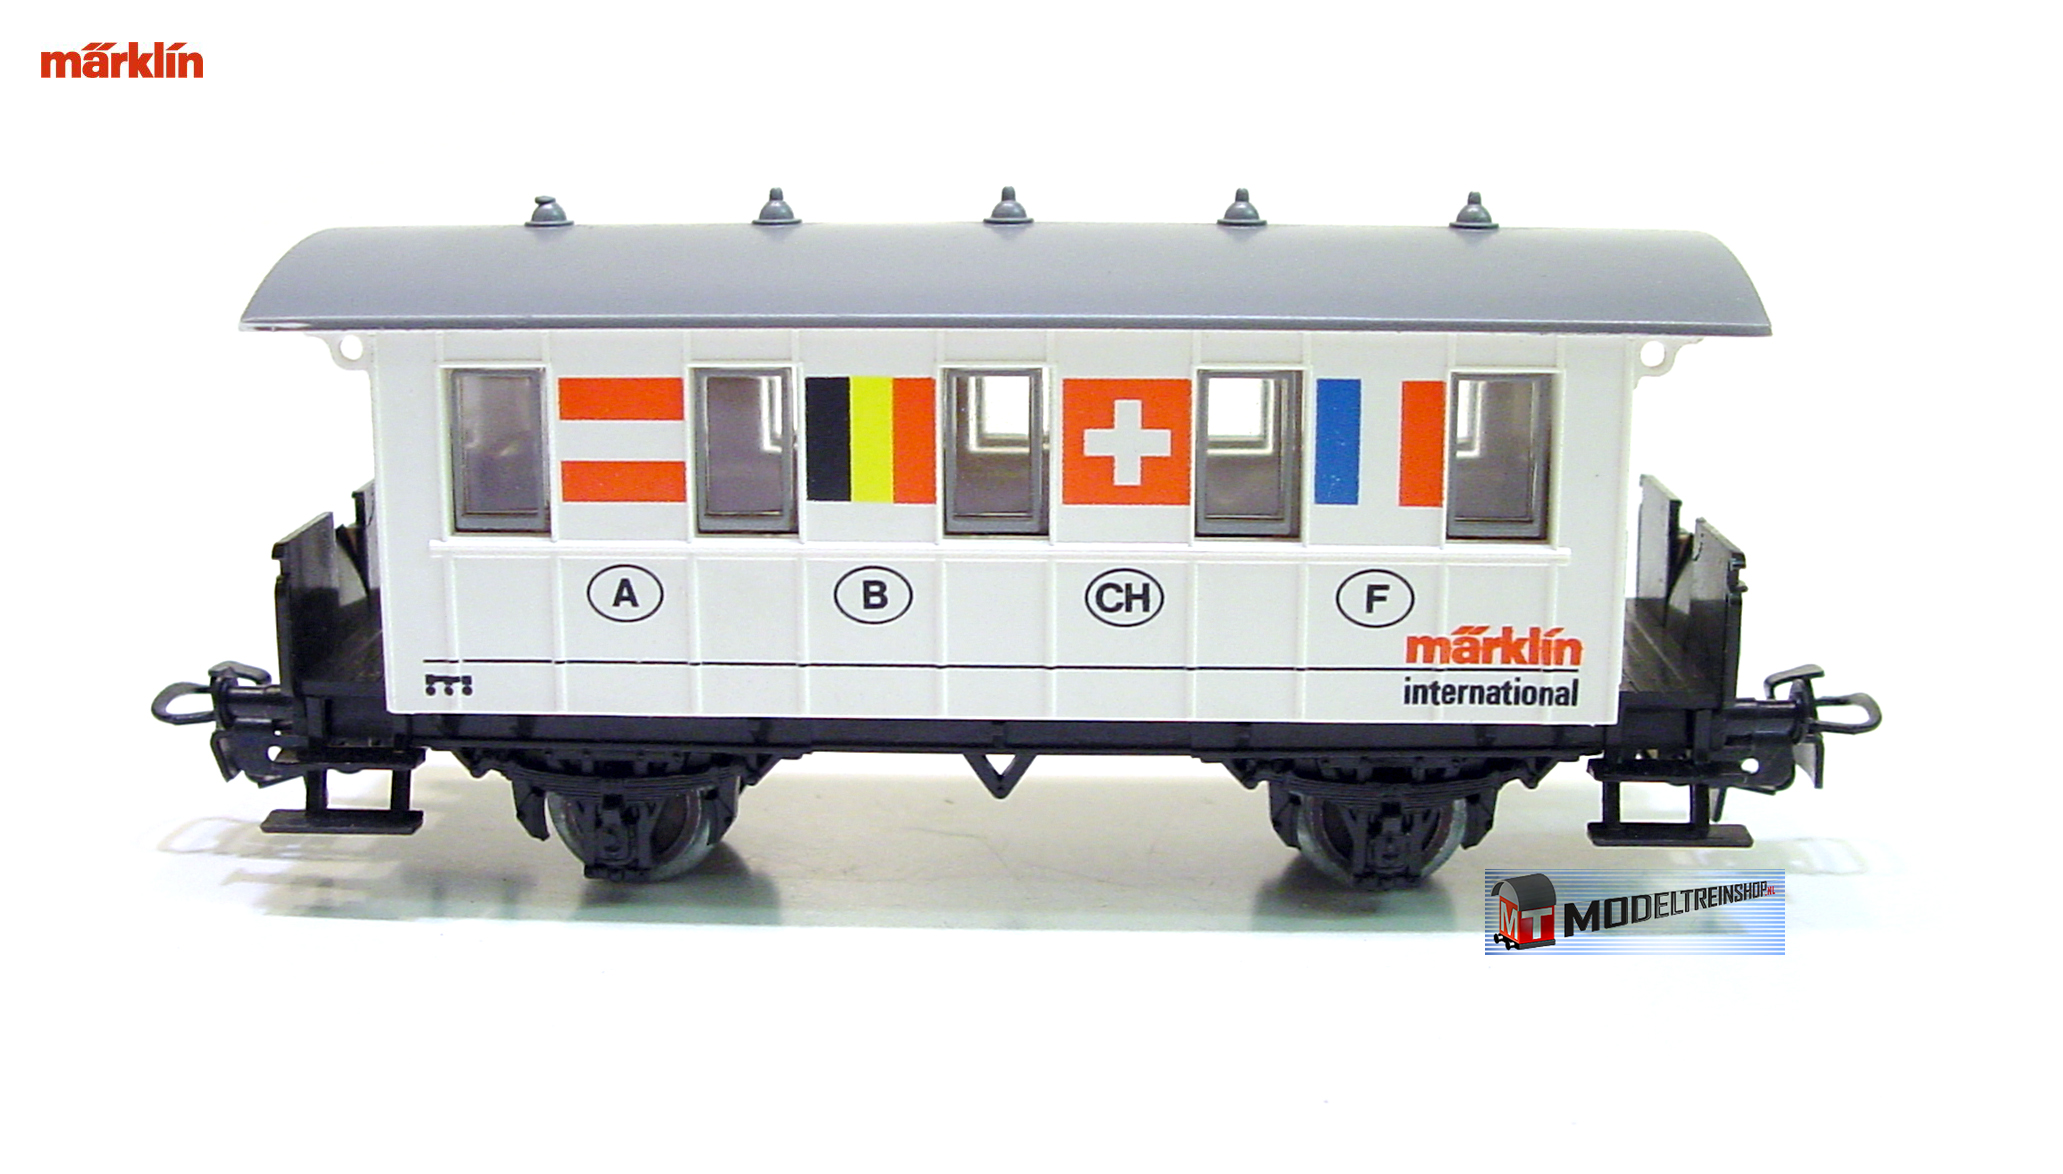 Marklin HO 4107 S5 Reizigersrijtuig International 8 Flaggen Dankeschön 1989 - Modeltreinshop